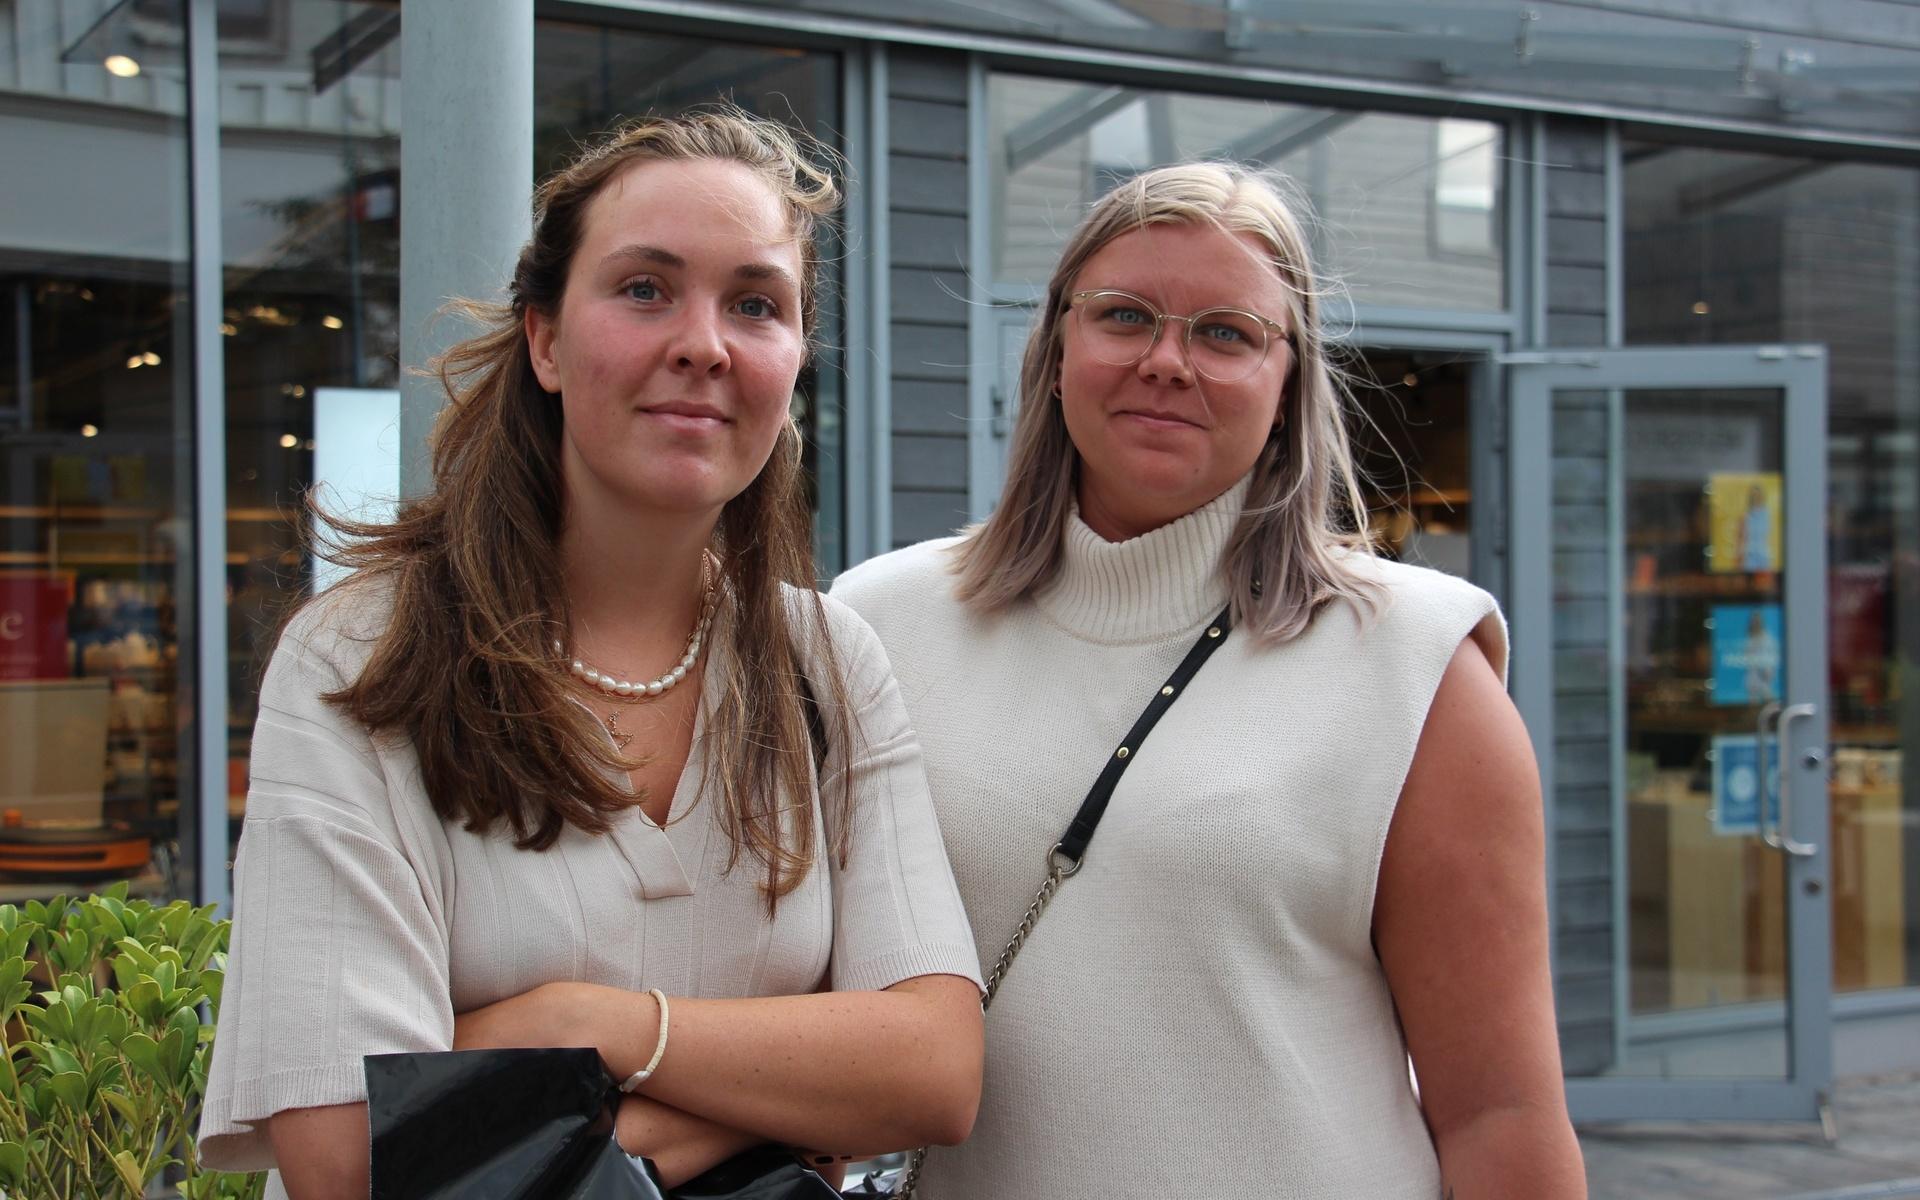 Från vänster: Malin Larsson, 24, och Sandra Karlsson, 24, är båda noga med att återvinna de papperspåsar de köper i butik. ”Jag brukar ta med mig en egen korg när jag ska handla” säger Sandra Karlsson.